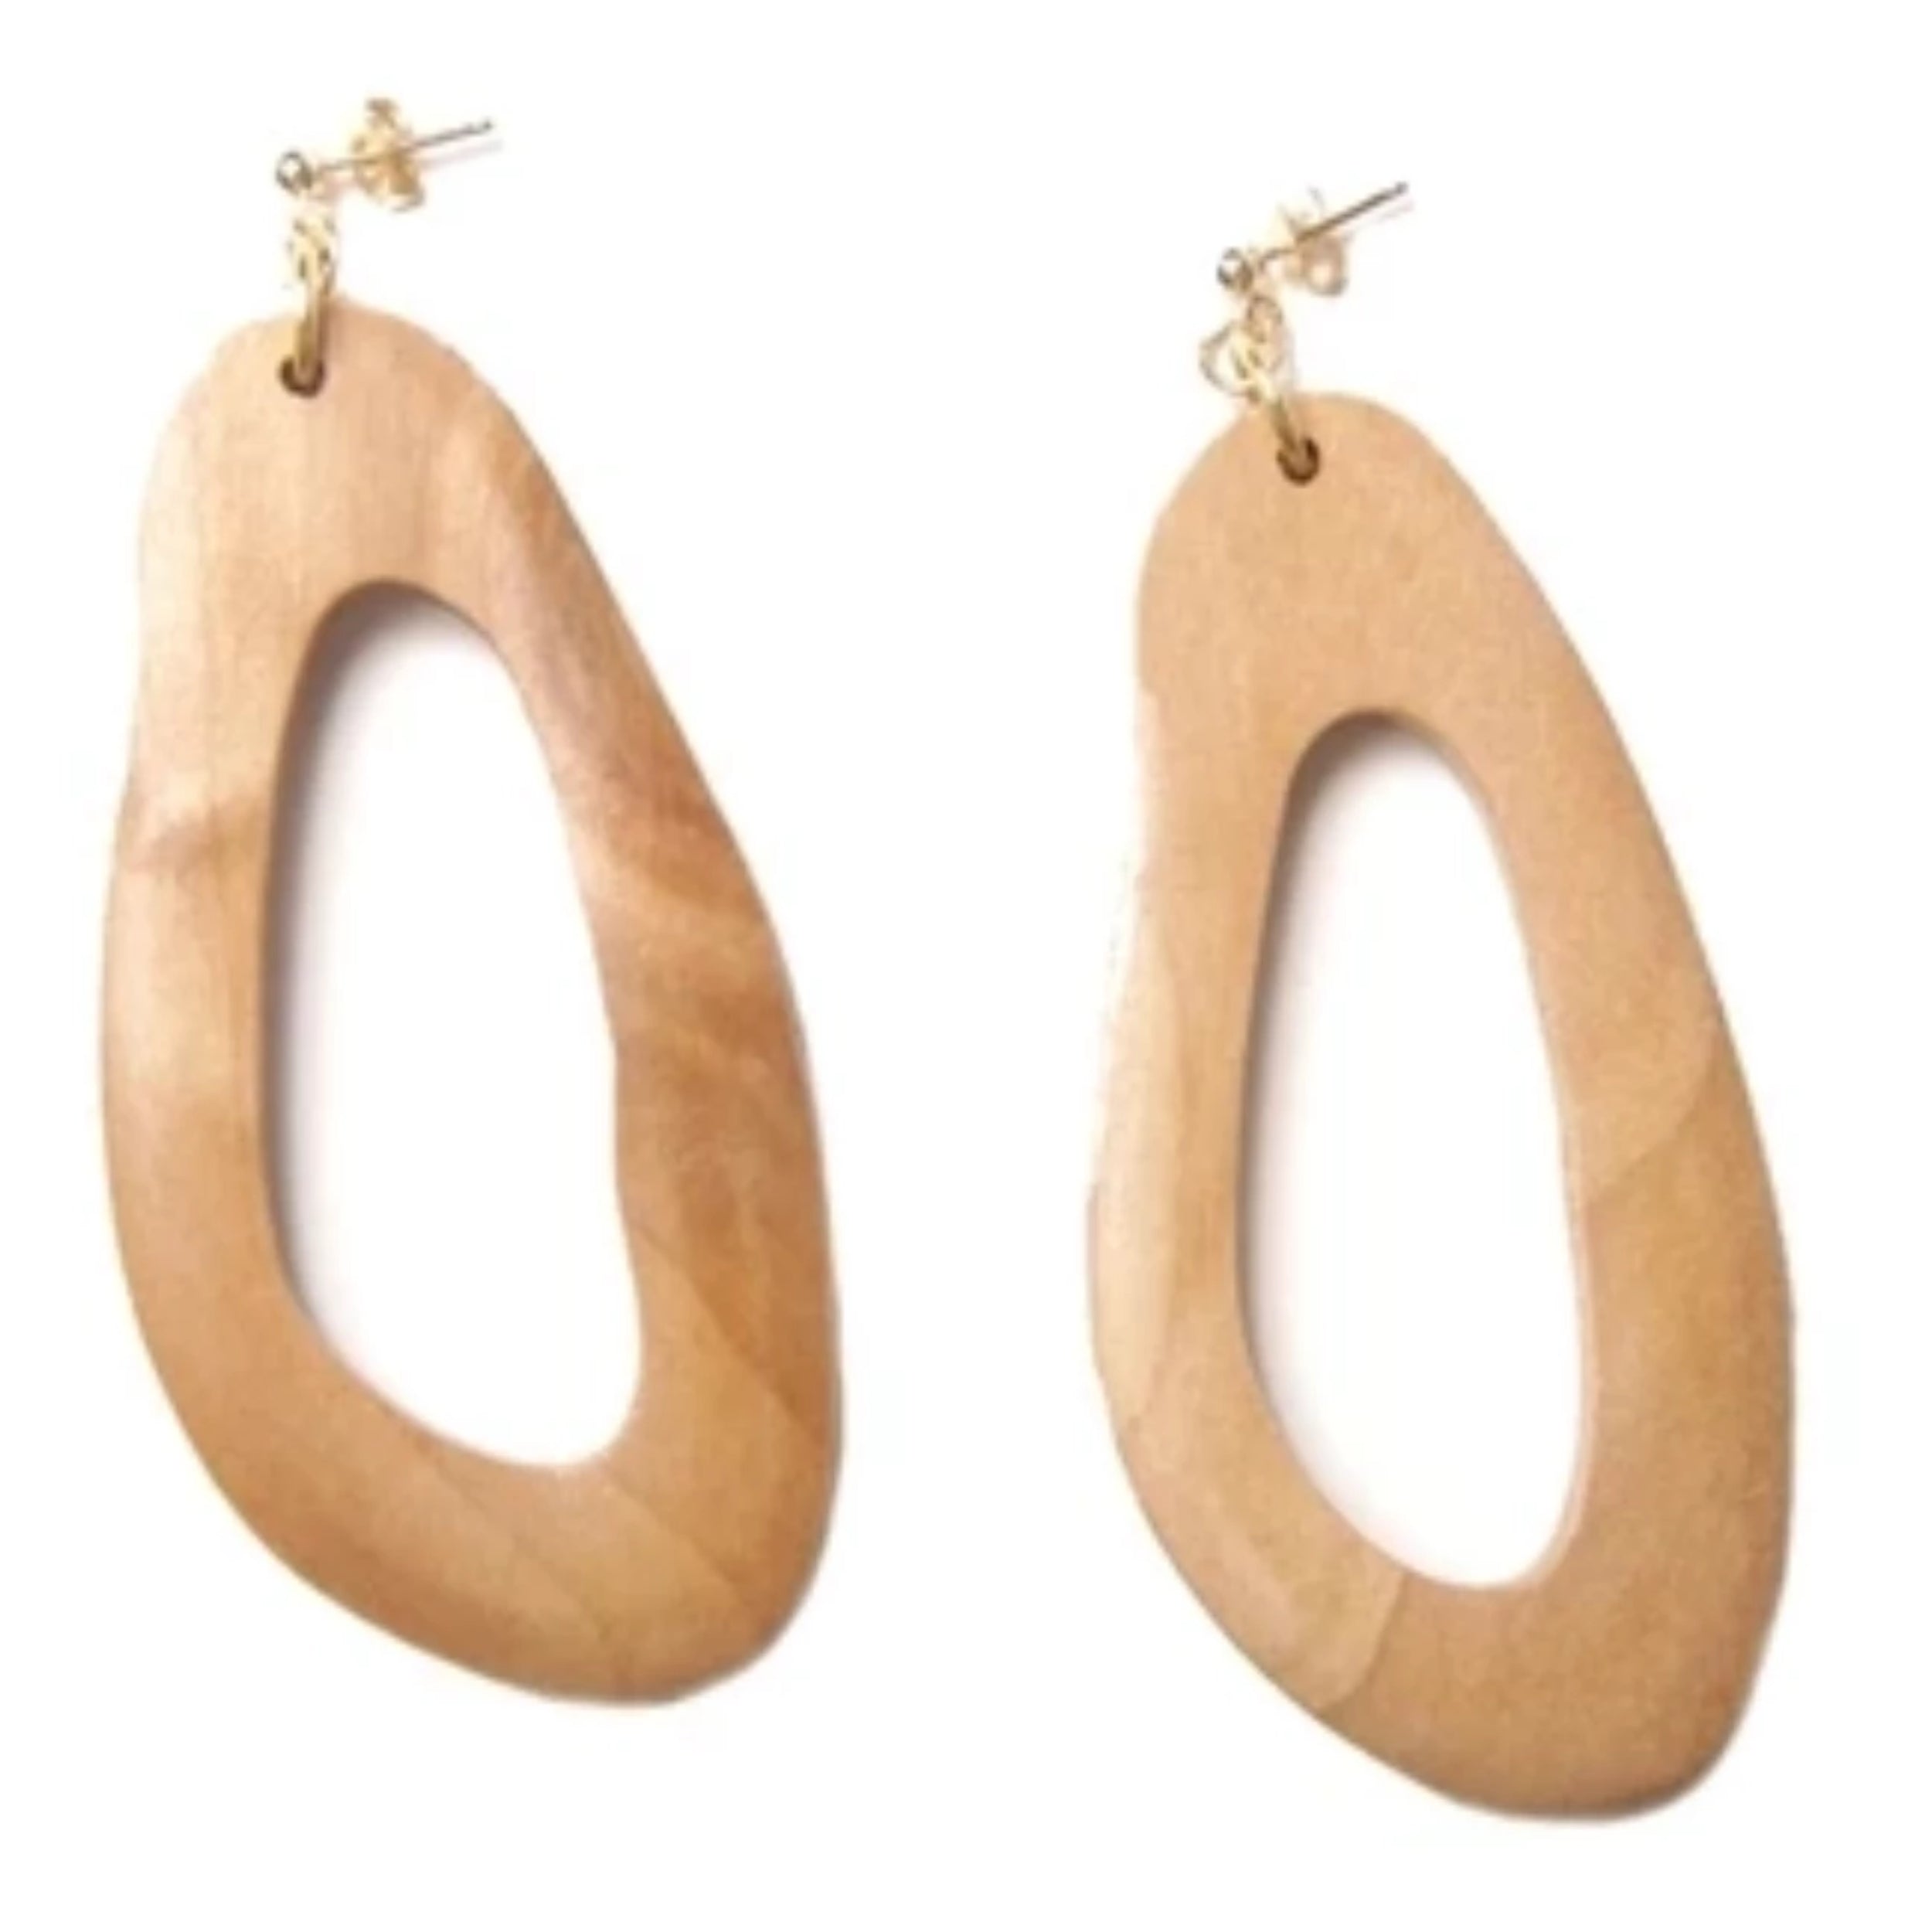 wooden earring sophie monet pendientes mallorca